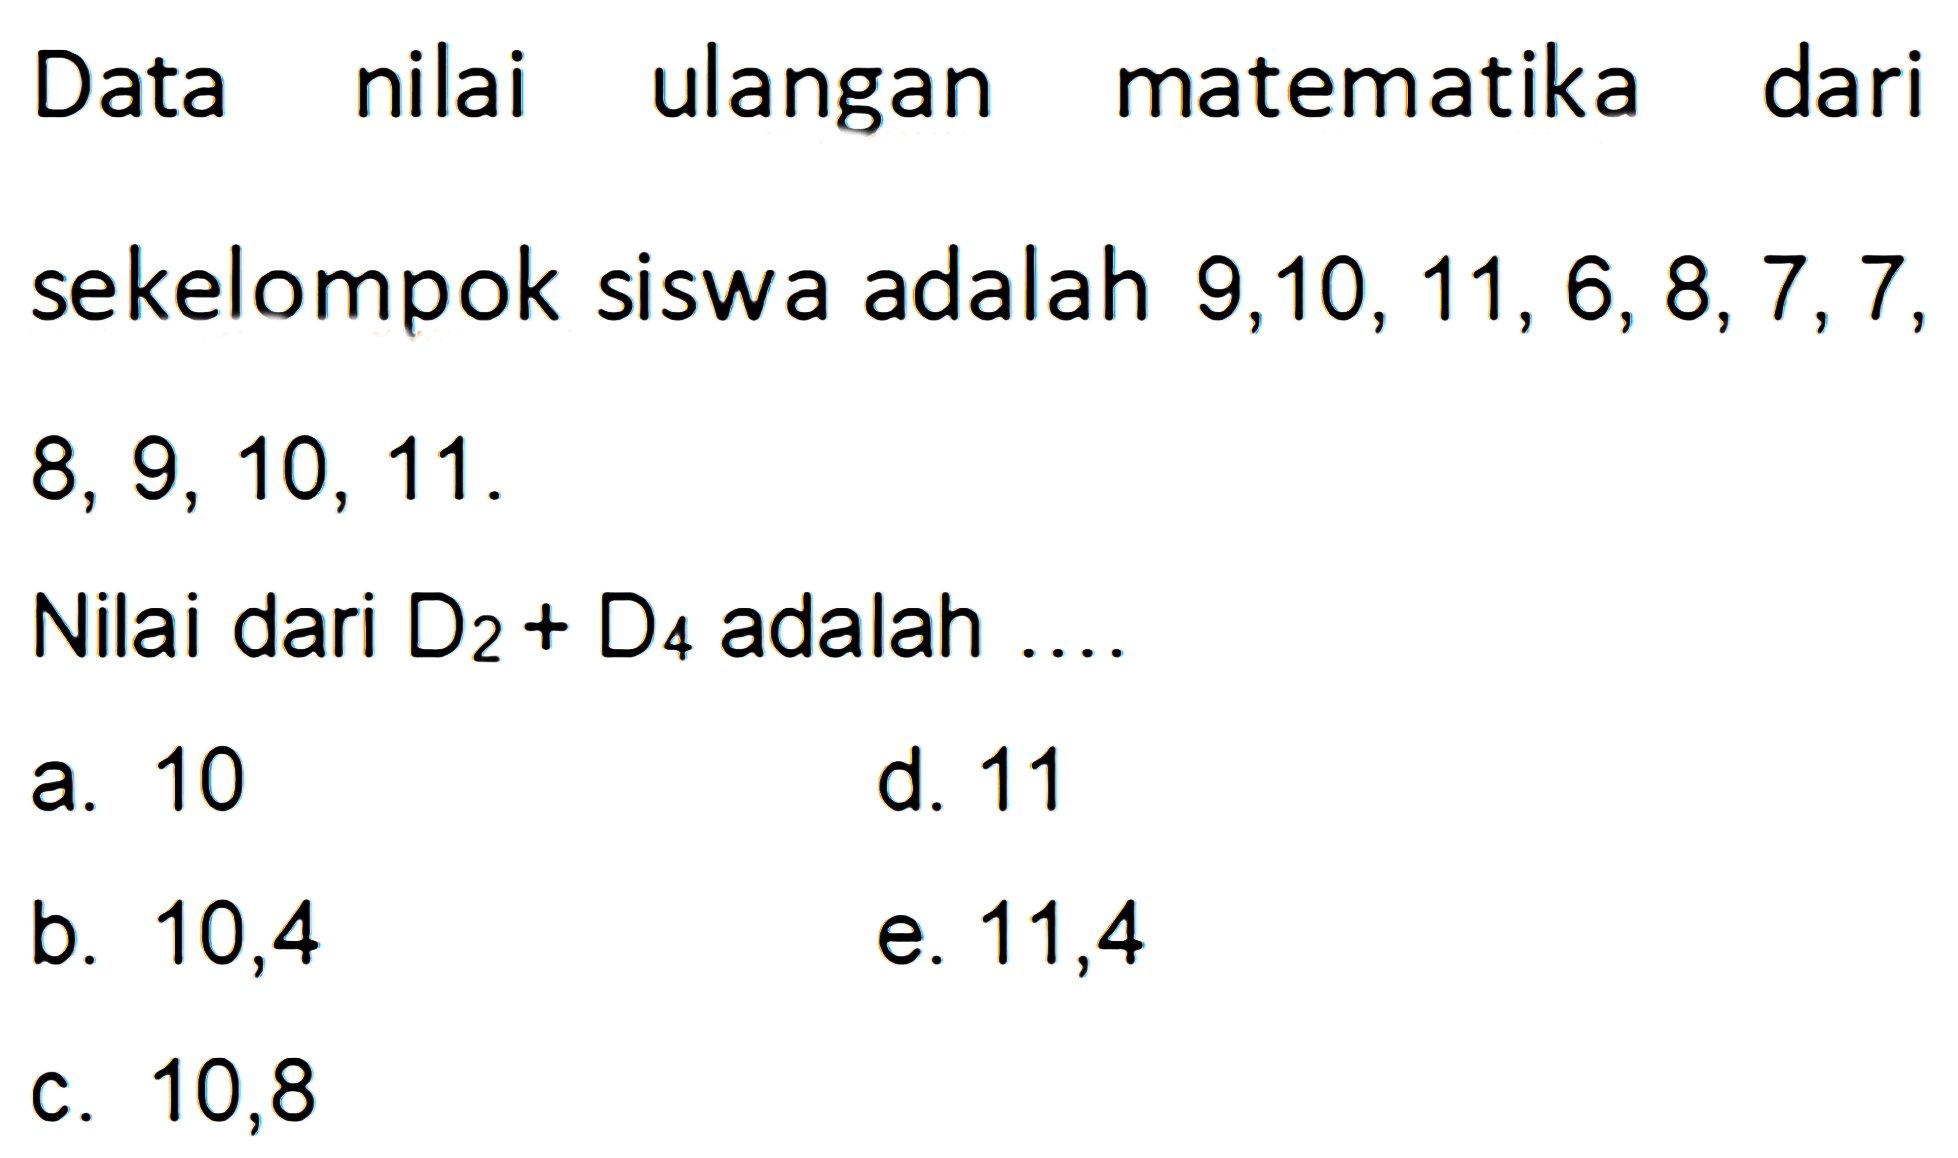 Data nilai ulangan matematika dari sekelompok siswa adalah 9,10,11, 6,8,7,7 8, 9, 10, 11. Nilai dari D2+D4 adalah....